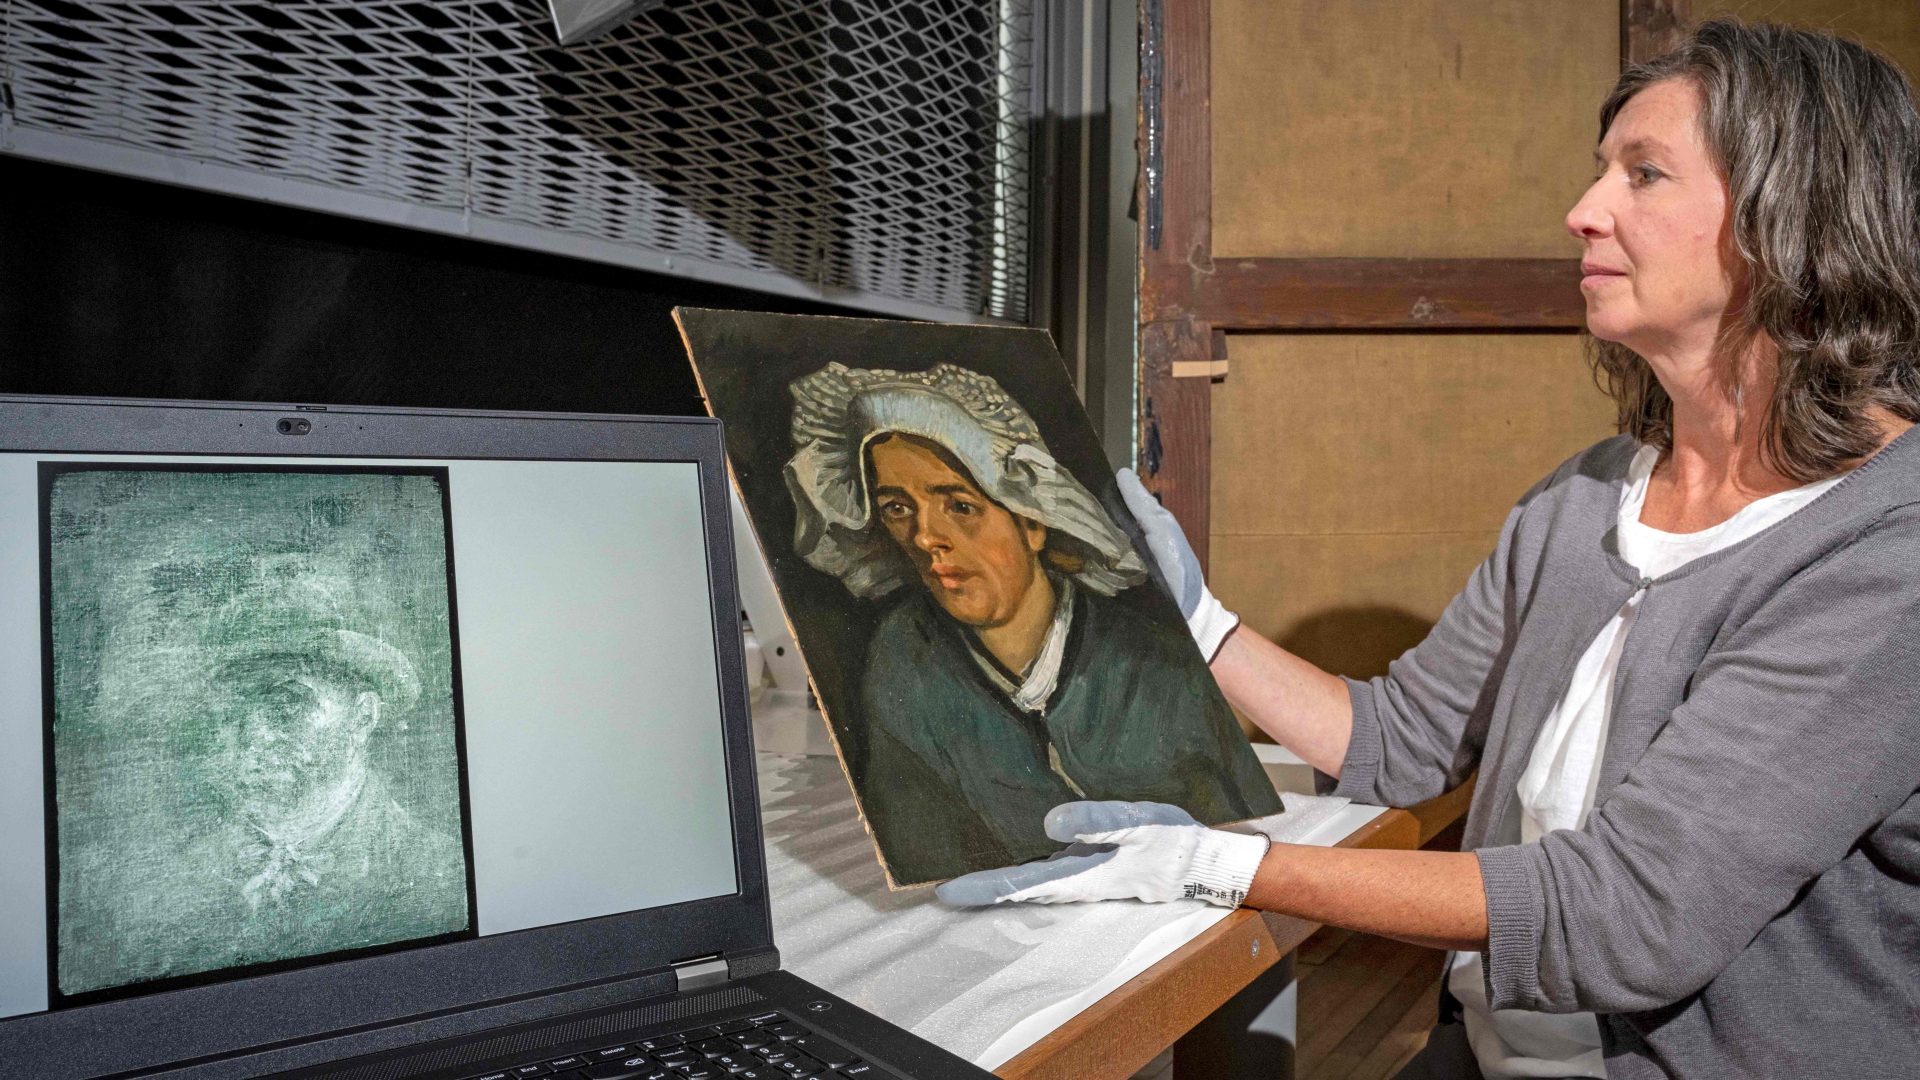 Lesley Stevenson betrachtet das Gemälde "Kopf einer Bäuerin" neben dem Röntgenbild eines versteckten Selbstporträts des niederländischen Malers Vincent Van Gogh | AFP